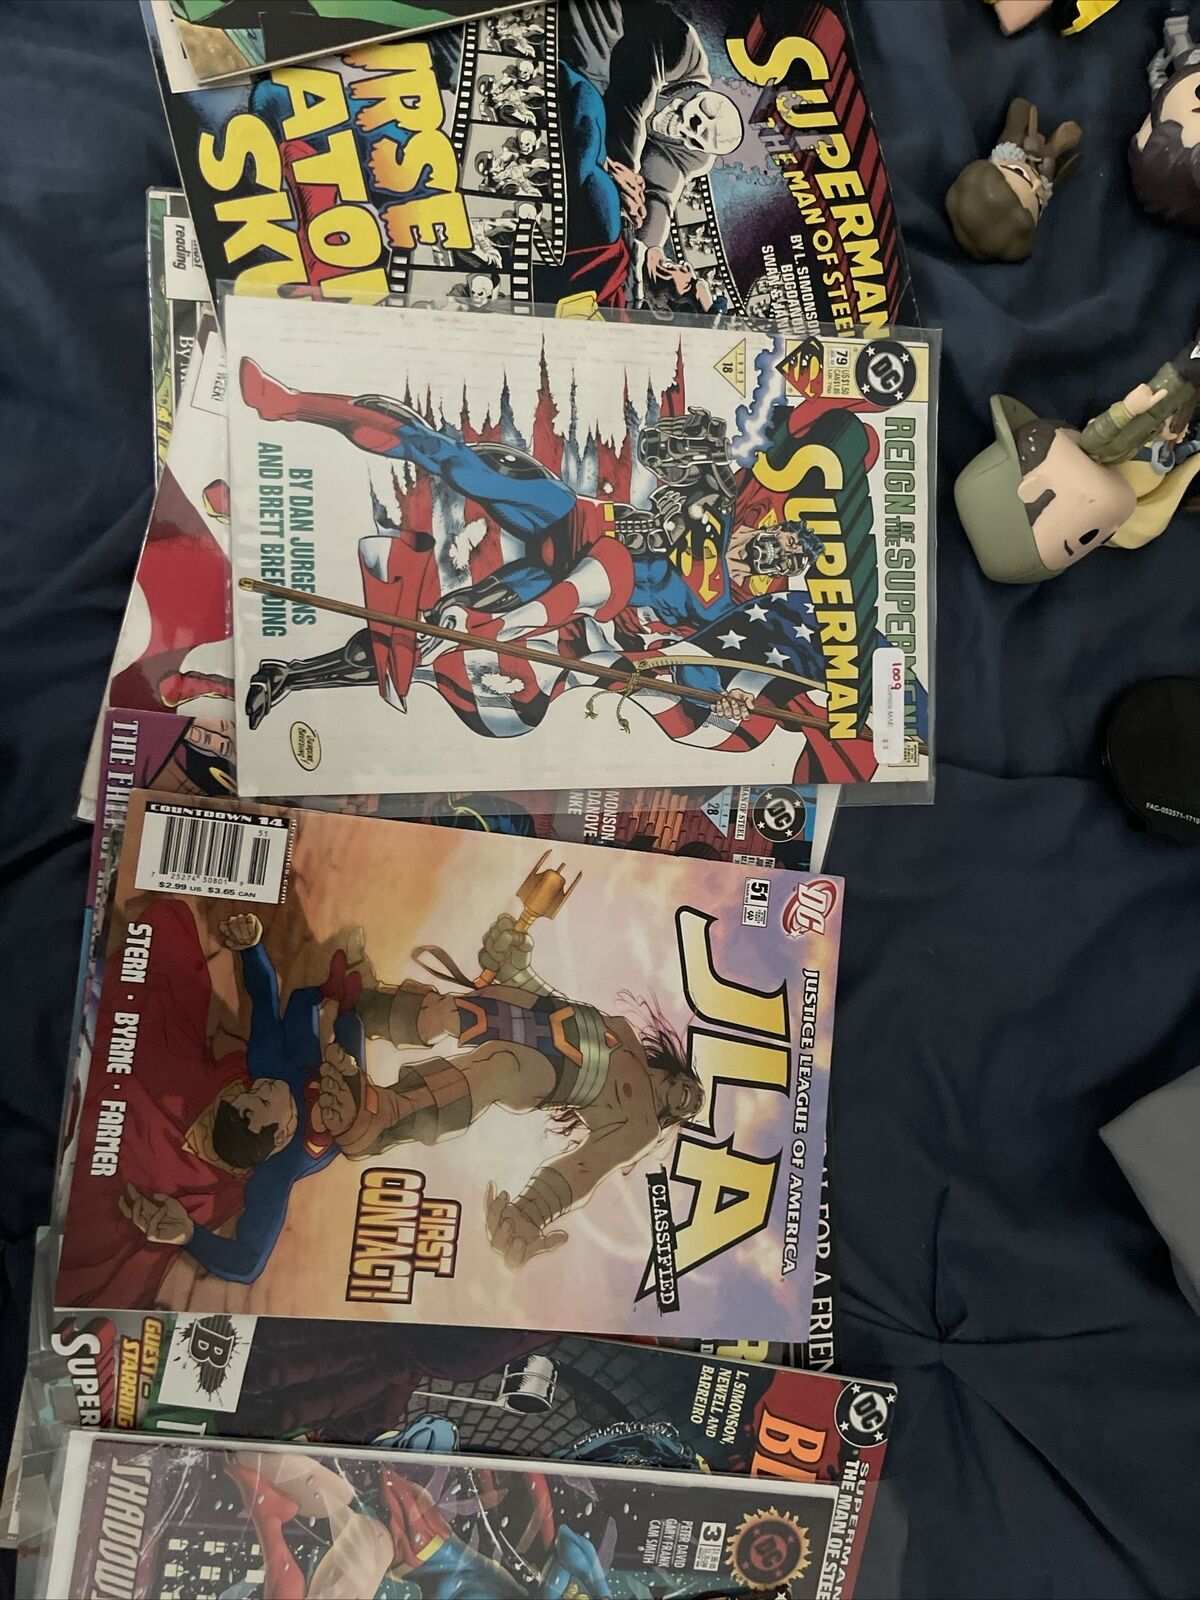 Lot of superman comics (26) Includes 3 Super girl comics and JLA comics.